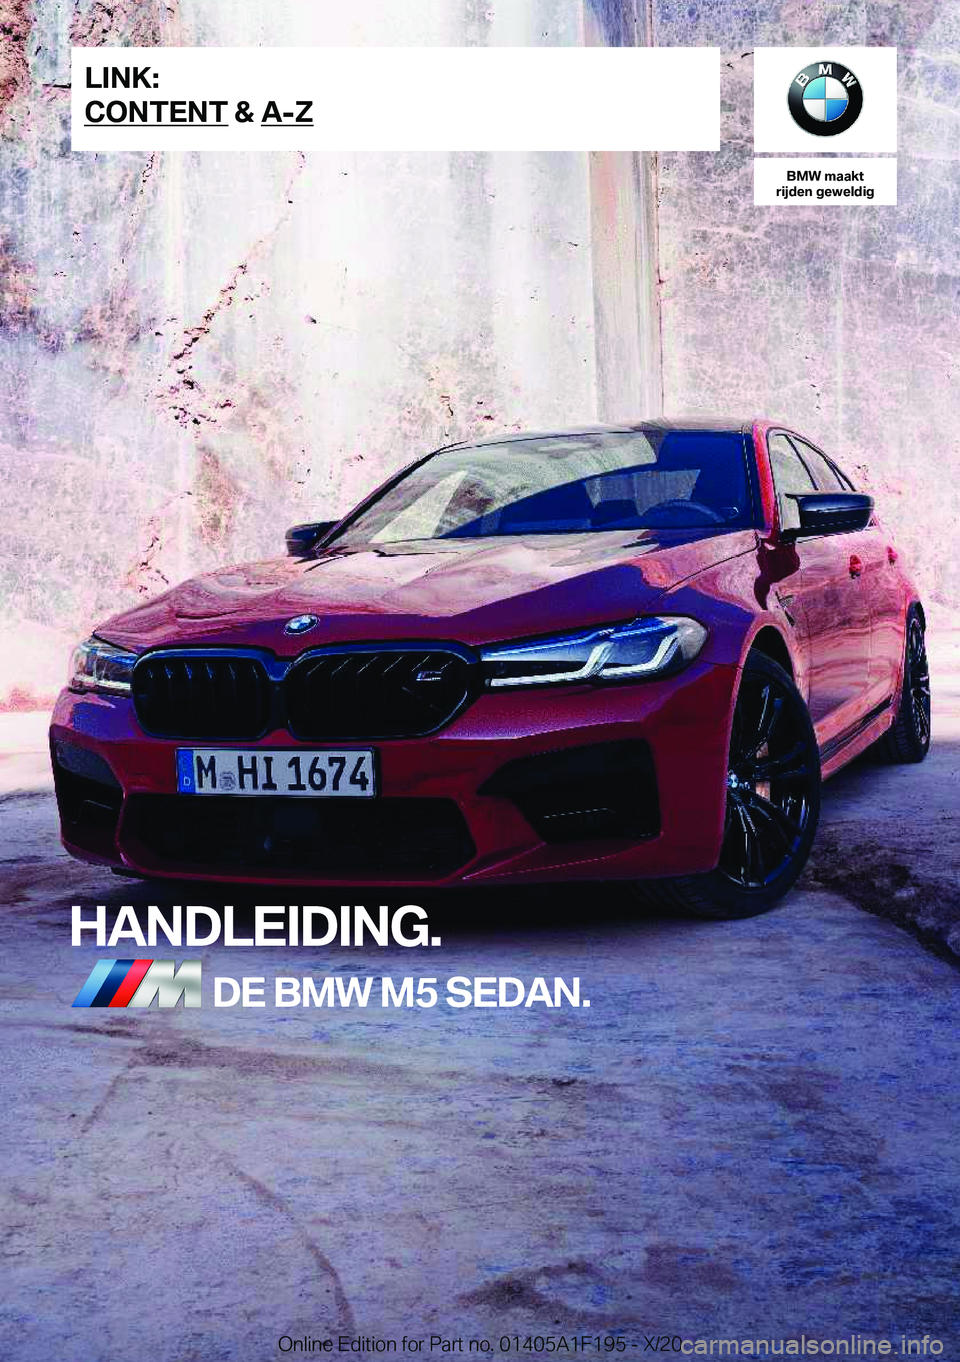 BMW M5 2021  Instructieboekjes (in Dutch) �B�M�W��m�a�a�k�t
�r�i�j�d�e�n��g�e�w�e�l�d�i�g
�H�A�N�D�L�E�I�D�I�N�G�.�D�E��B�M�W��M�5��S�E�D�A�N�.�L�I�N�K�:
�C�O�N�T�E�N�T��&��A�-�Z�O�n�l�i�n�e��E�d�i�t�i�o�n��f�o�r��P�a�r�t��n�o�.��